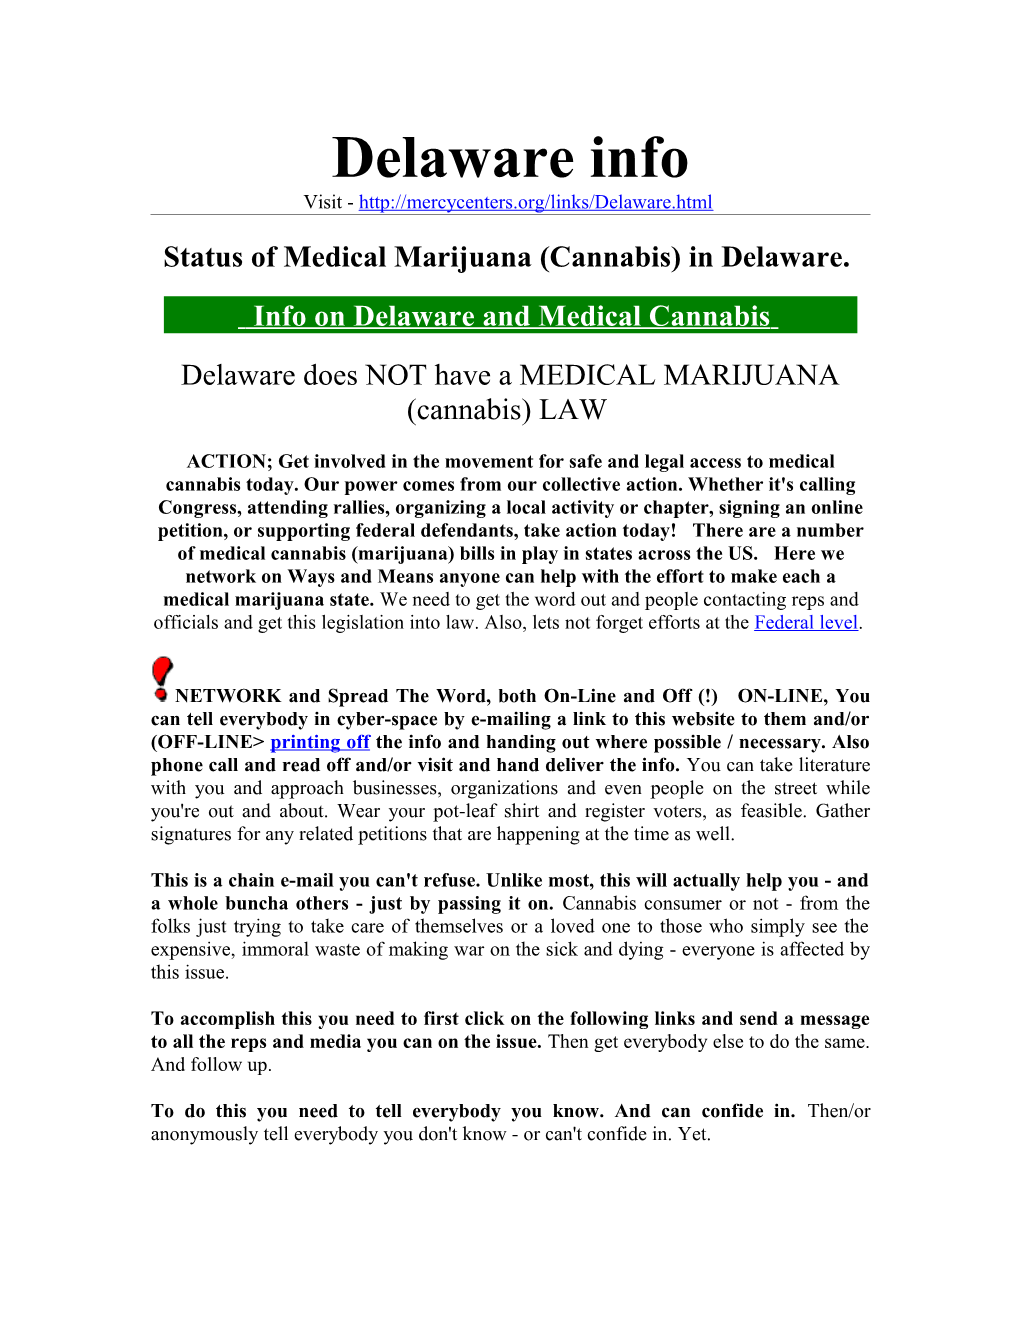 Status of Medical Marijuana (Cannabis) in Delaware